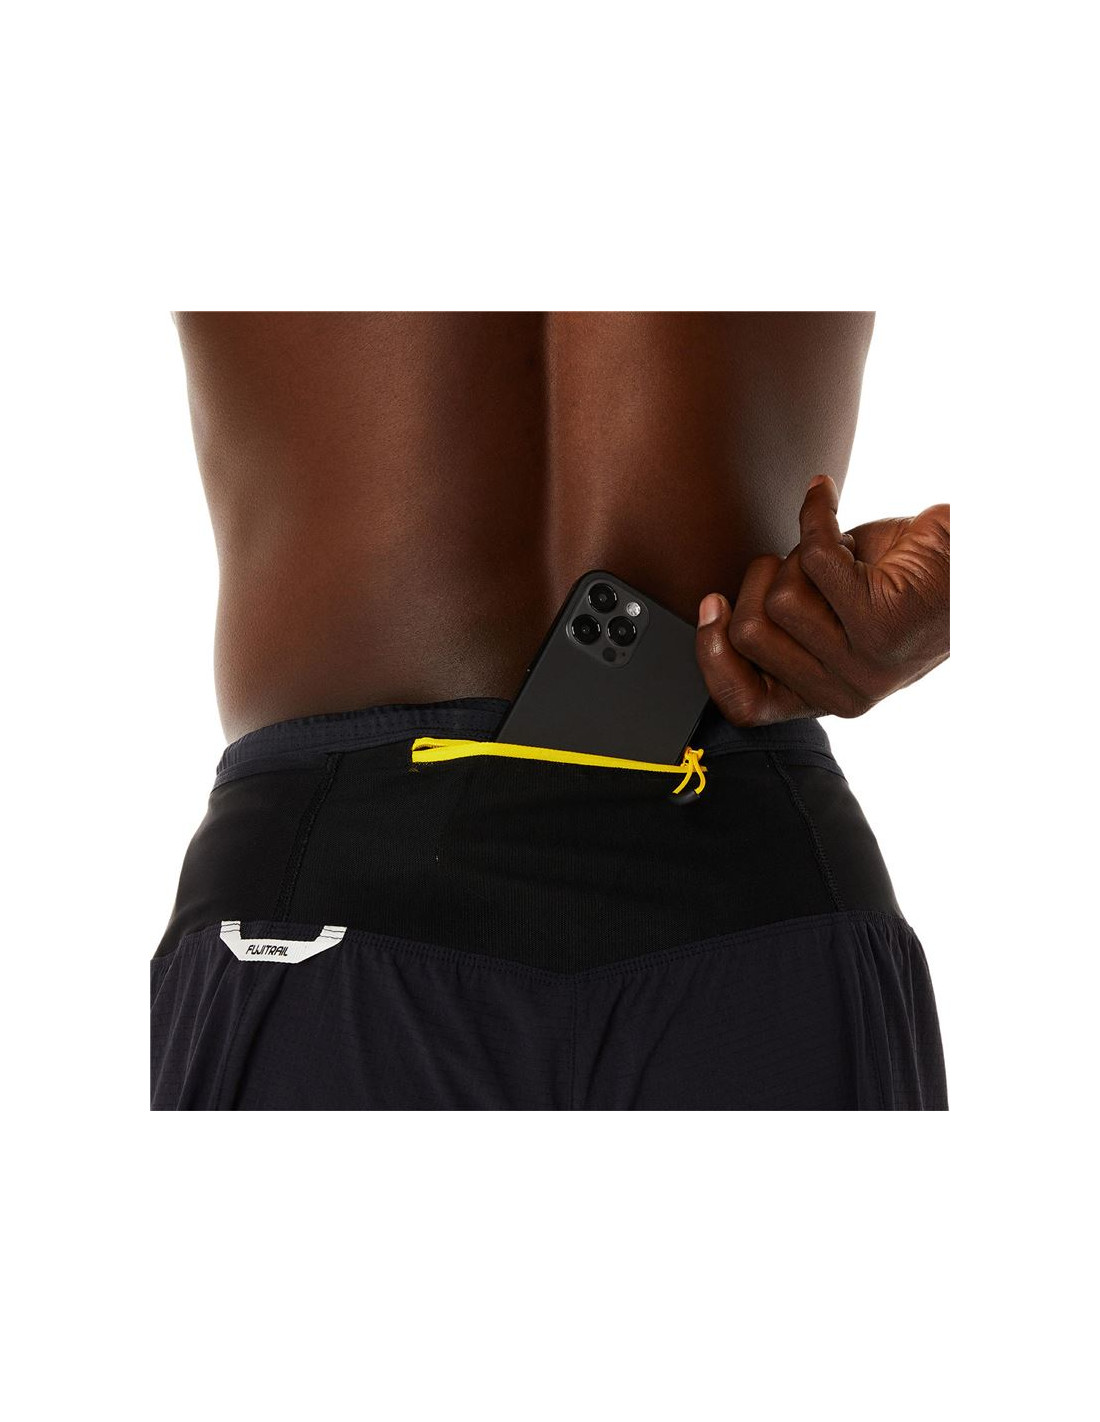 Encantador Ver a través de Medicina ᐈ Pantalones de Running ASICS Fujitrail Hombre Negro – Atmosfera Sport©